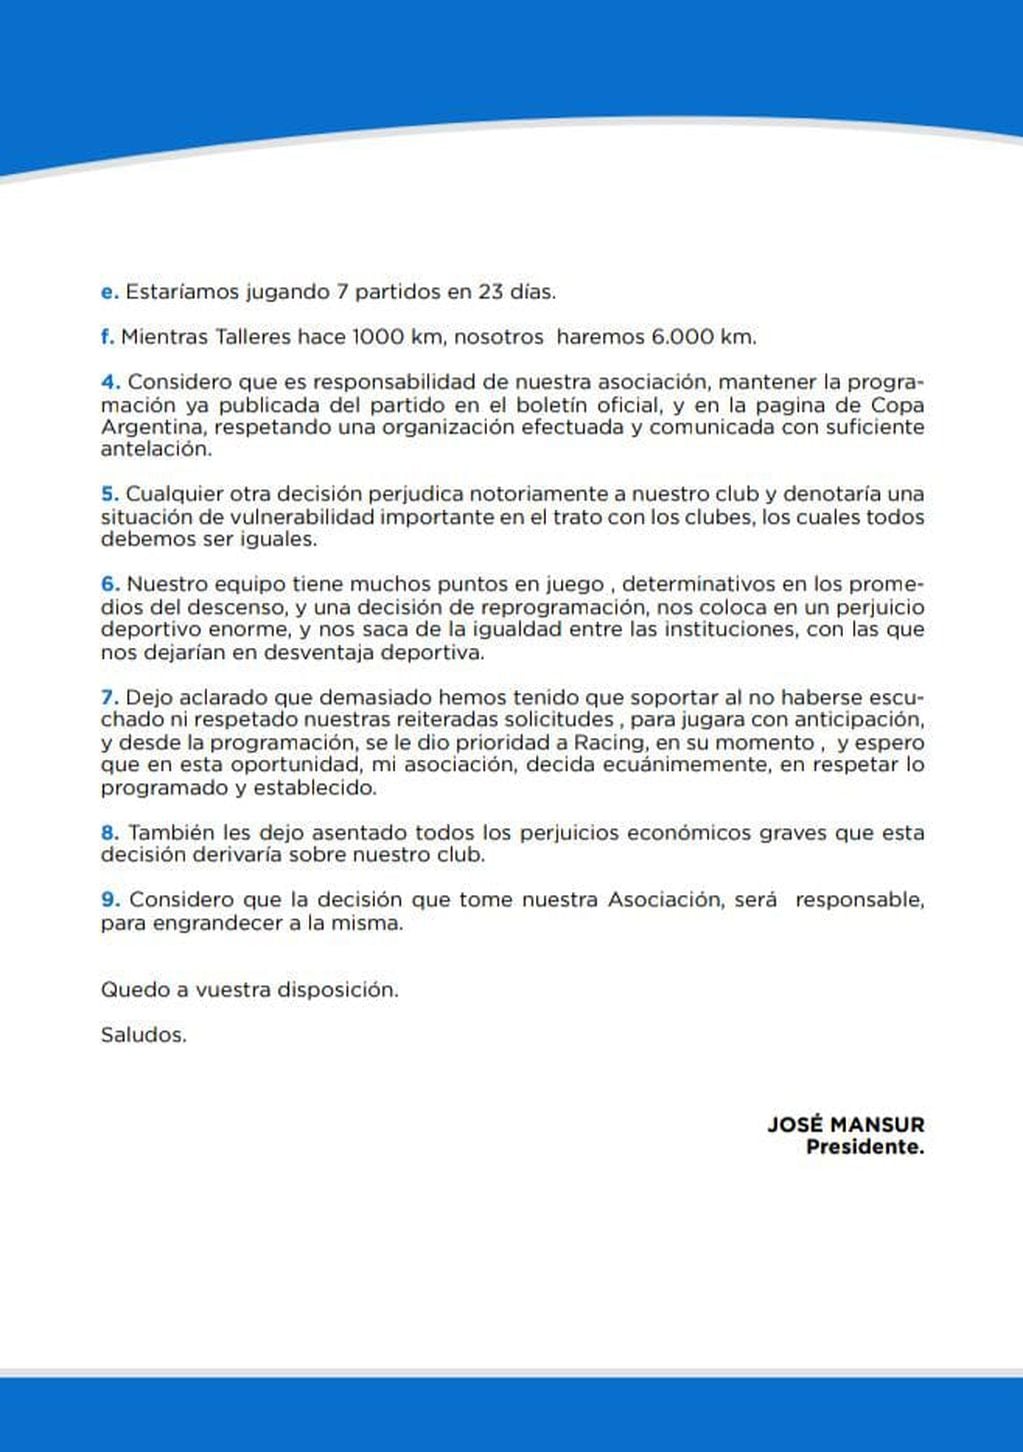 El rechazo de los directivos de Godoy Cruz a la posible postergación del partido semifinal de Copa Argentina. / Gentileza.